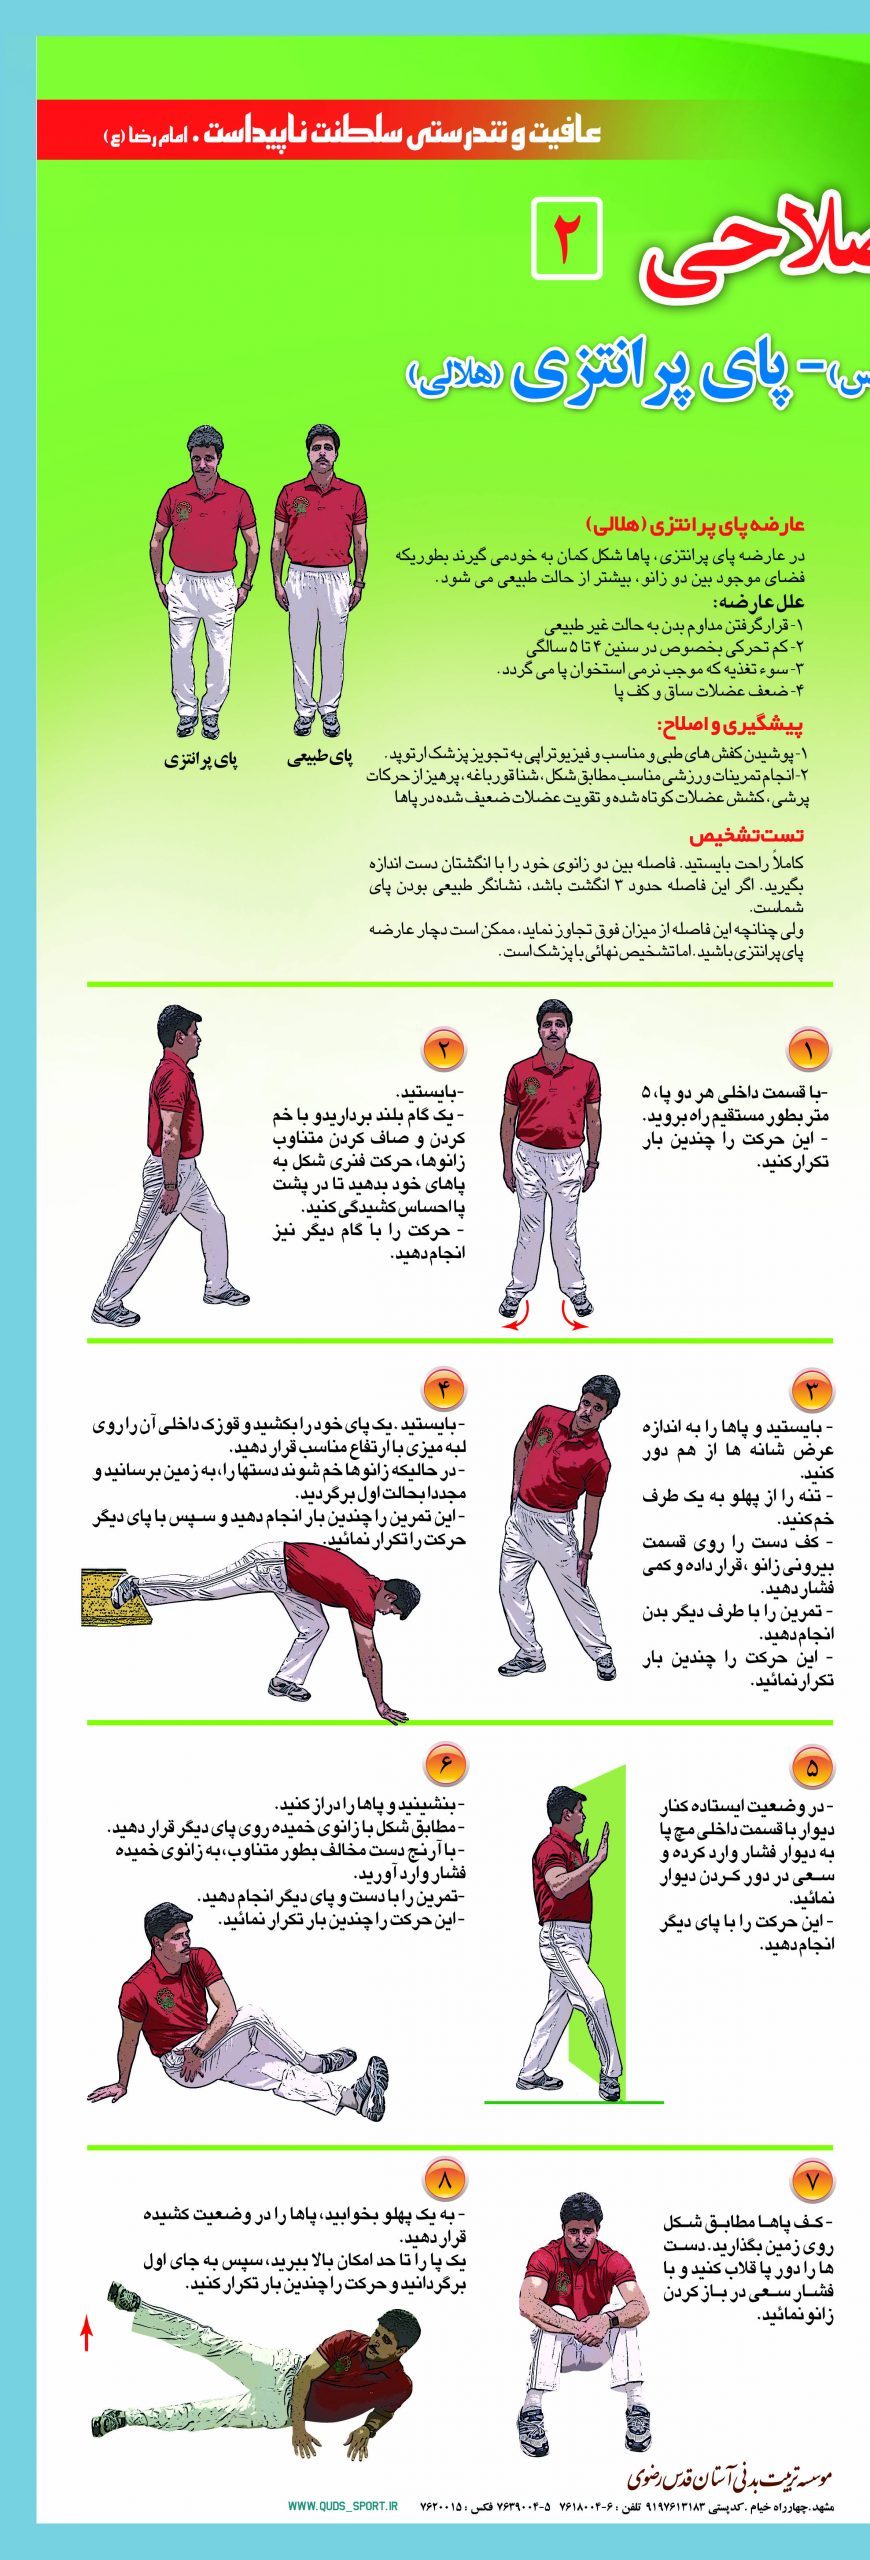 تصویر روش علمی تمرین های درمان پای پرانتزی در مشهد را شرح می دهد .